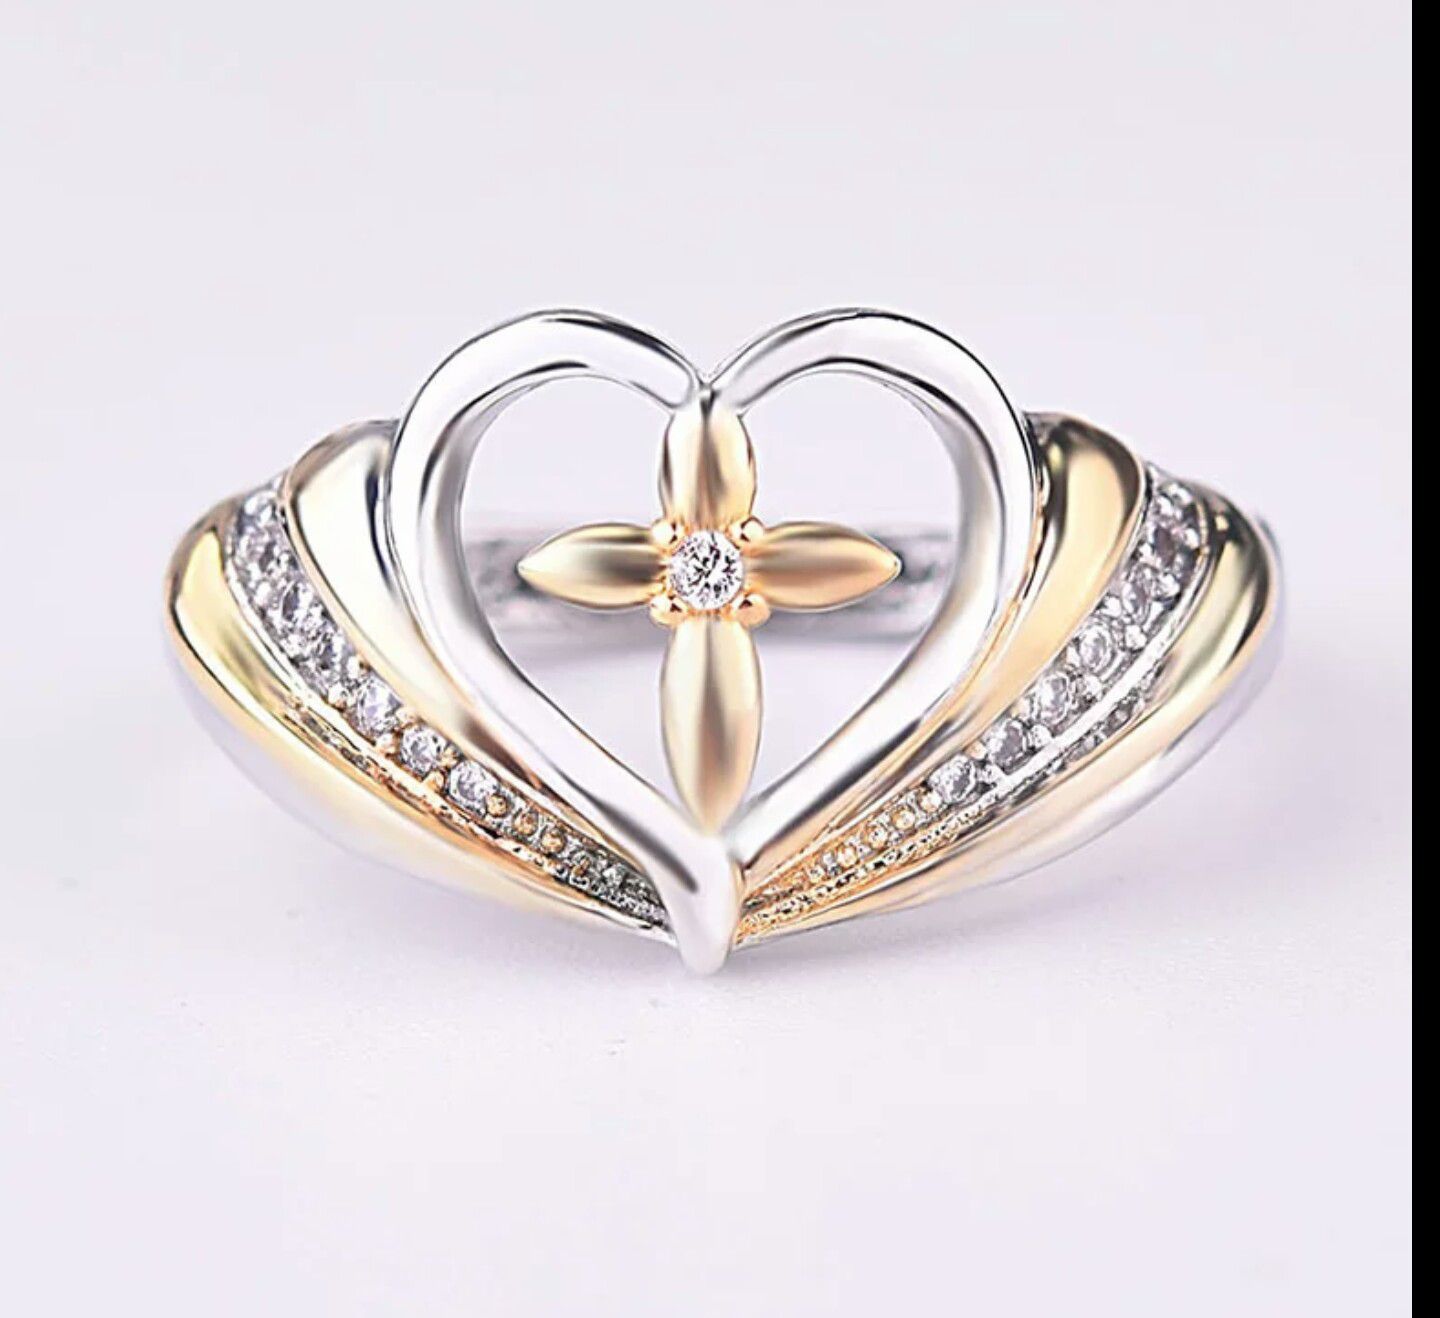 Heart/Cross Design Silver 925 Ring for Women